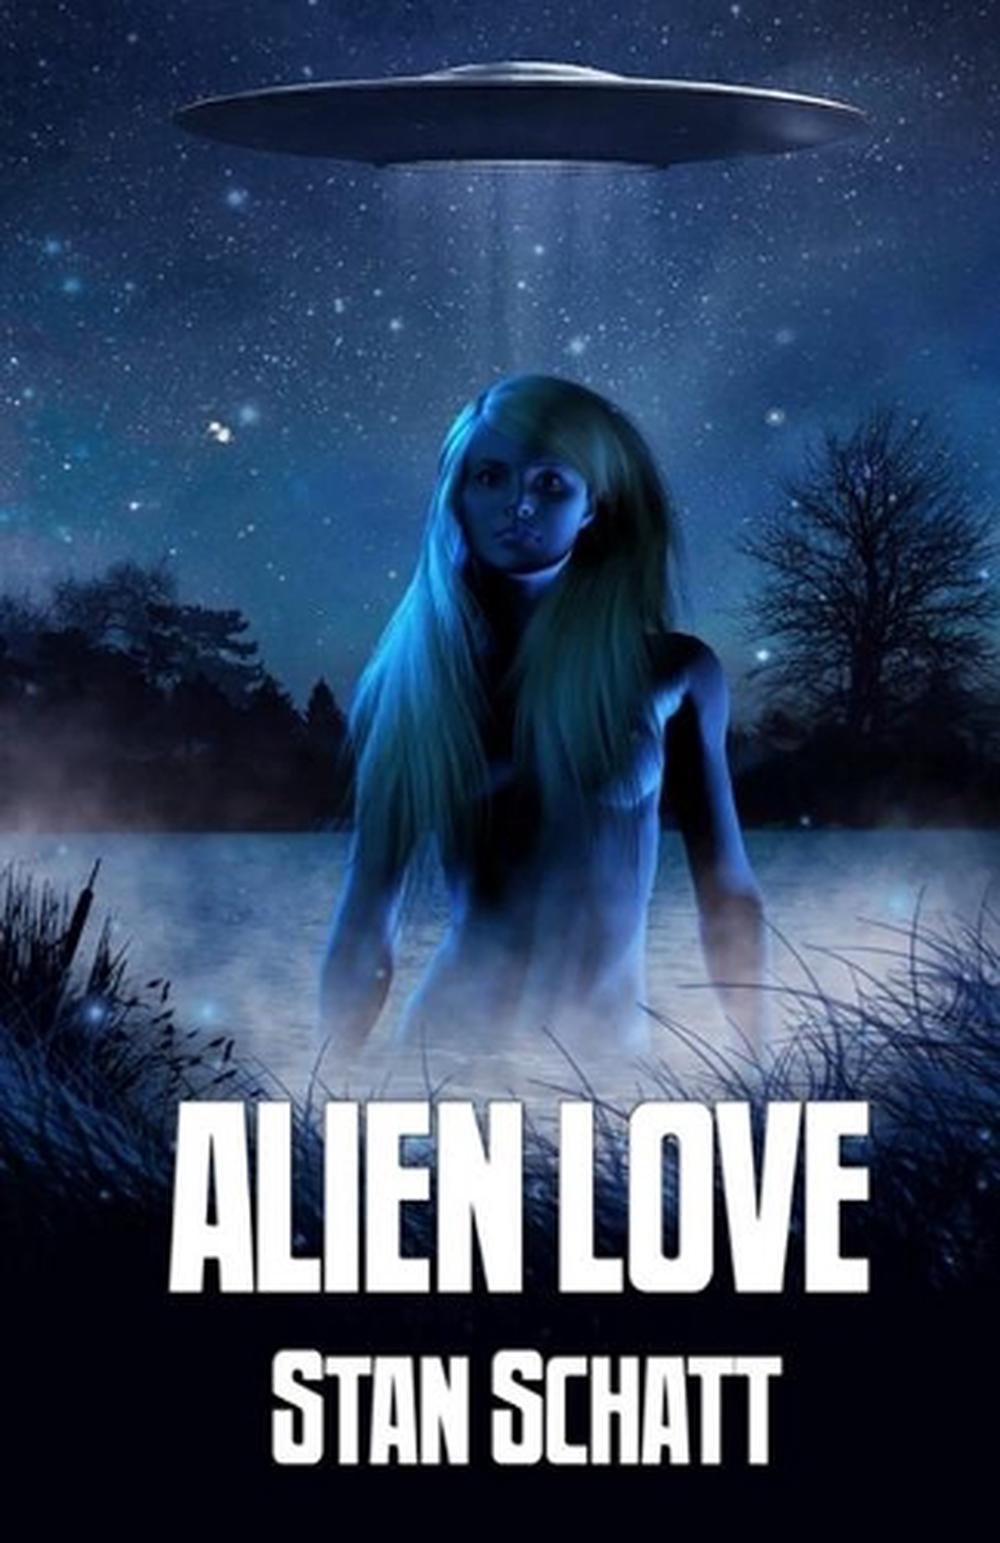 My Alien Love by Lavenia R. Boswell